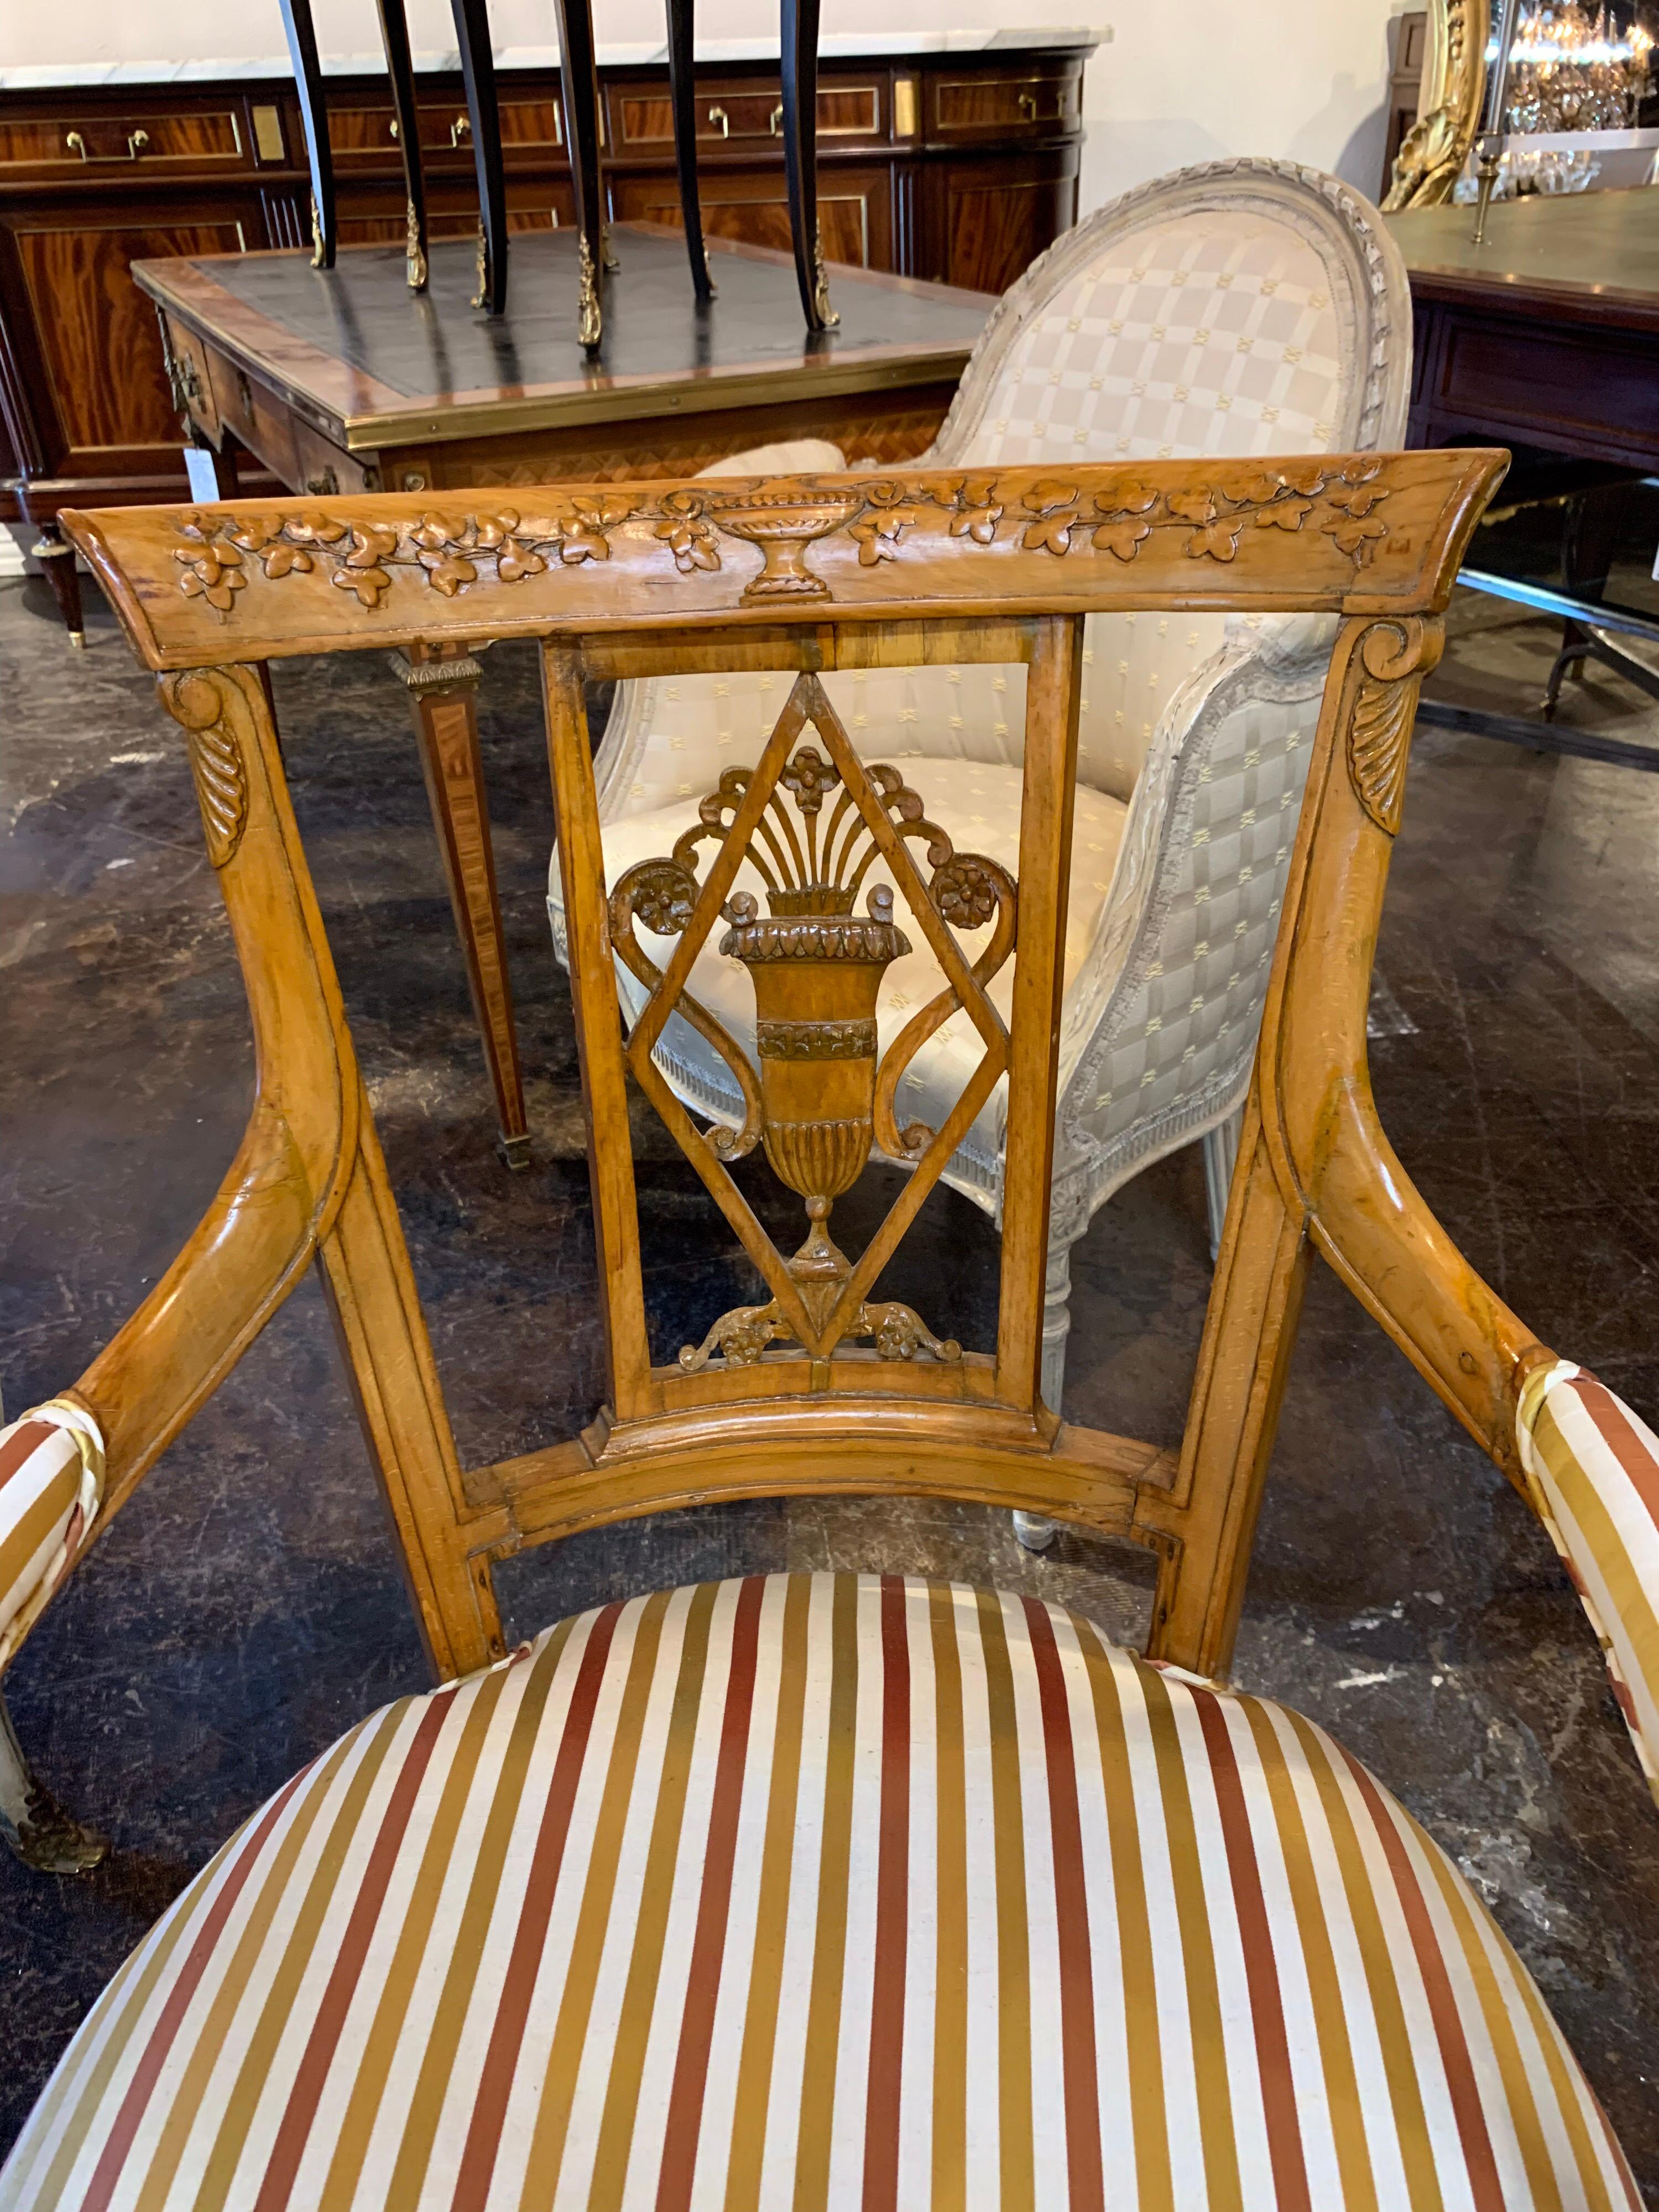 Belle paire de fauteuils en bois fruitier sculpté d'Angleterre dans le style néoclassique. Les sculptures représentent une urne avec des fleurs et des vignes débordantes. Les chaises sont tapissées en soie avec les couleurs, crème, cuivre et or.